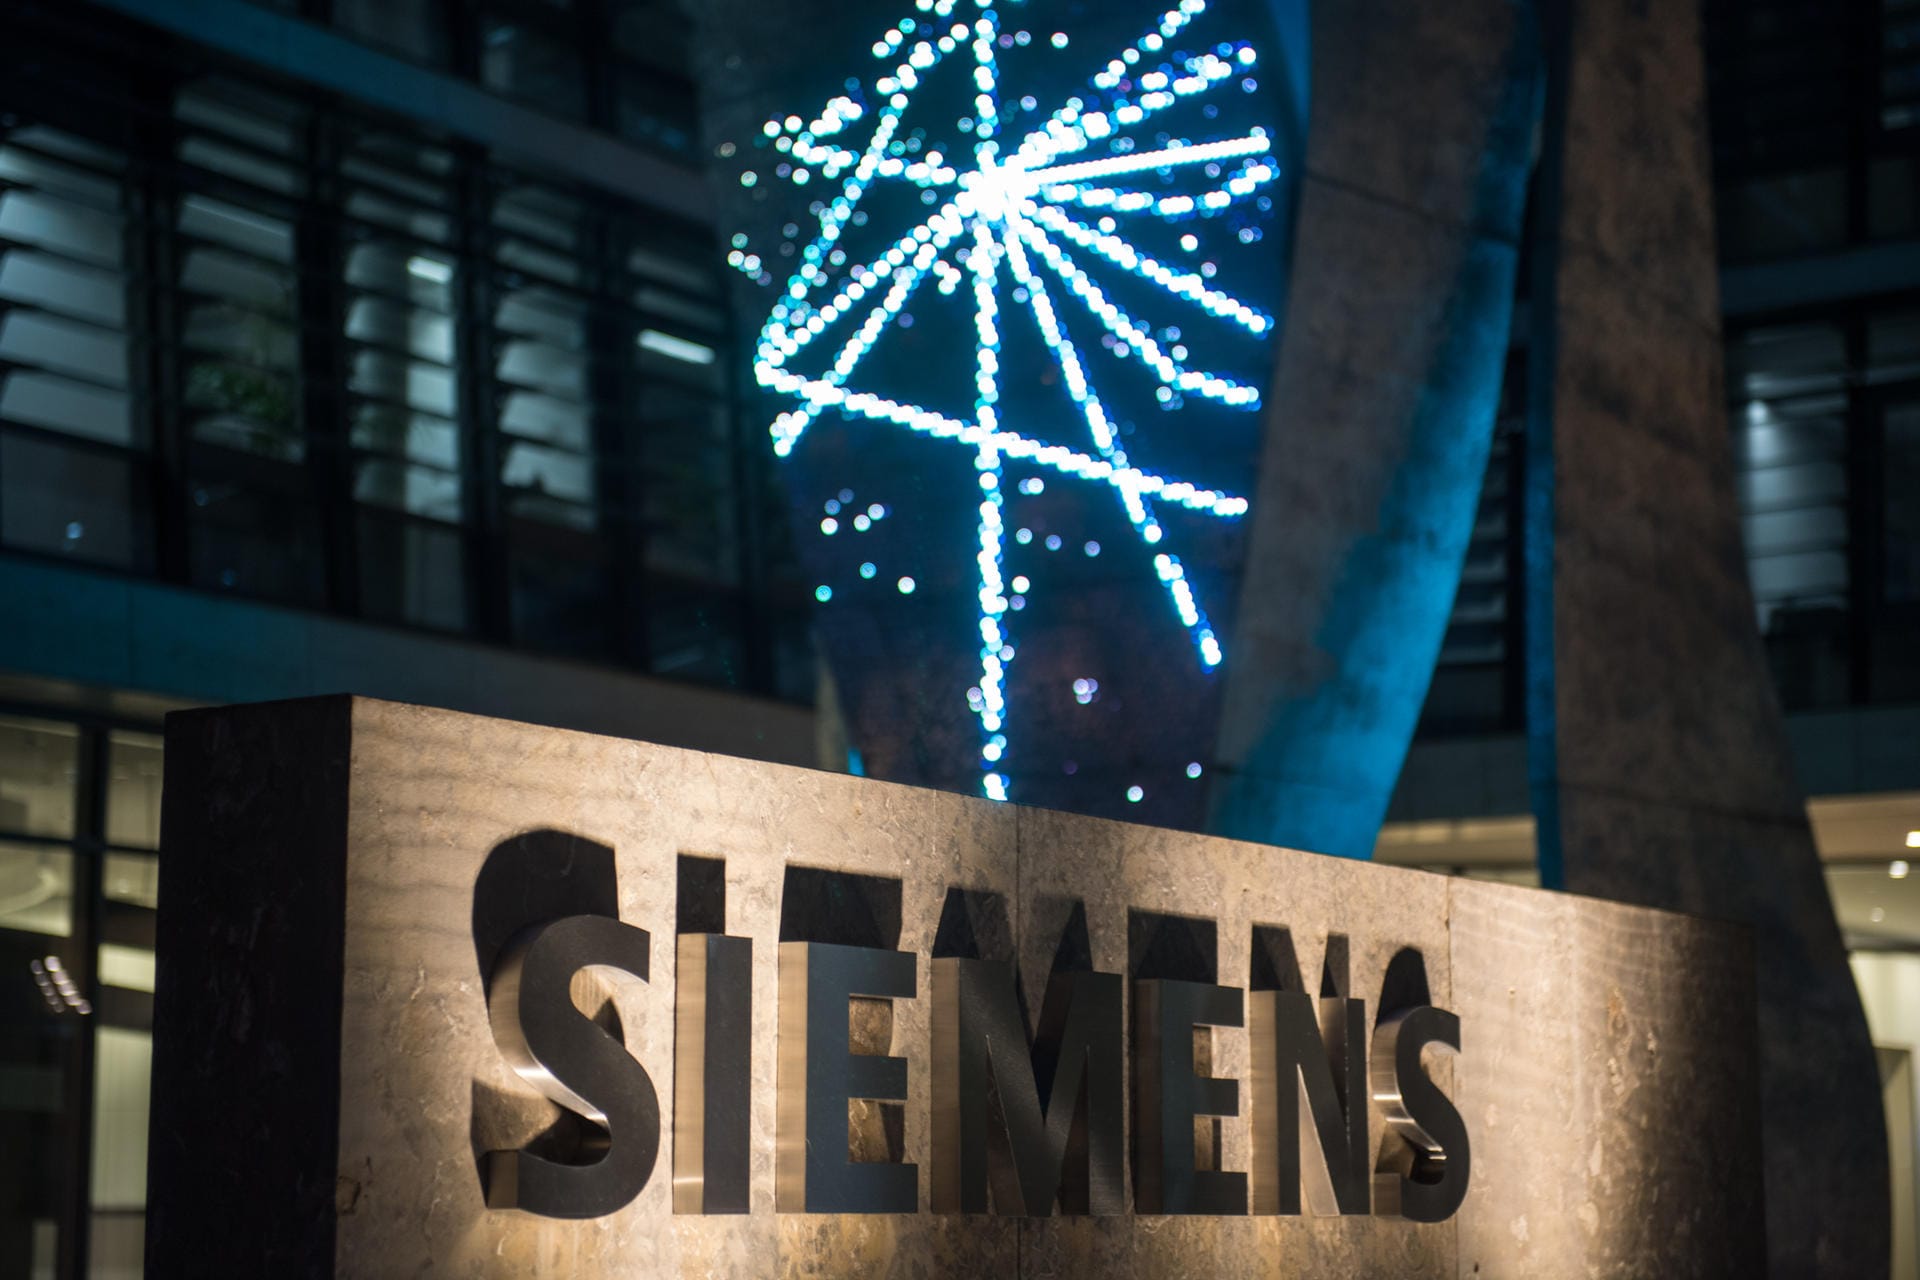 Dicht hinter Adidas folgt ein weiteres deutsches Traditionsunternehmen: Siemens schafft es international auf Platz 15 und ist damit das dritte Unternehmen in der Liste. Das Unternehmen ist insgesamt in 190 Ländern vertreten.